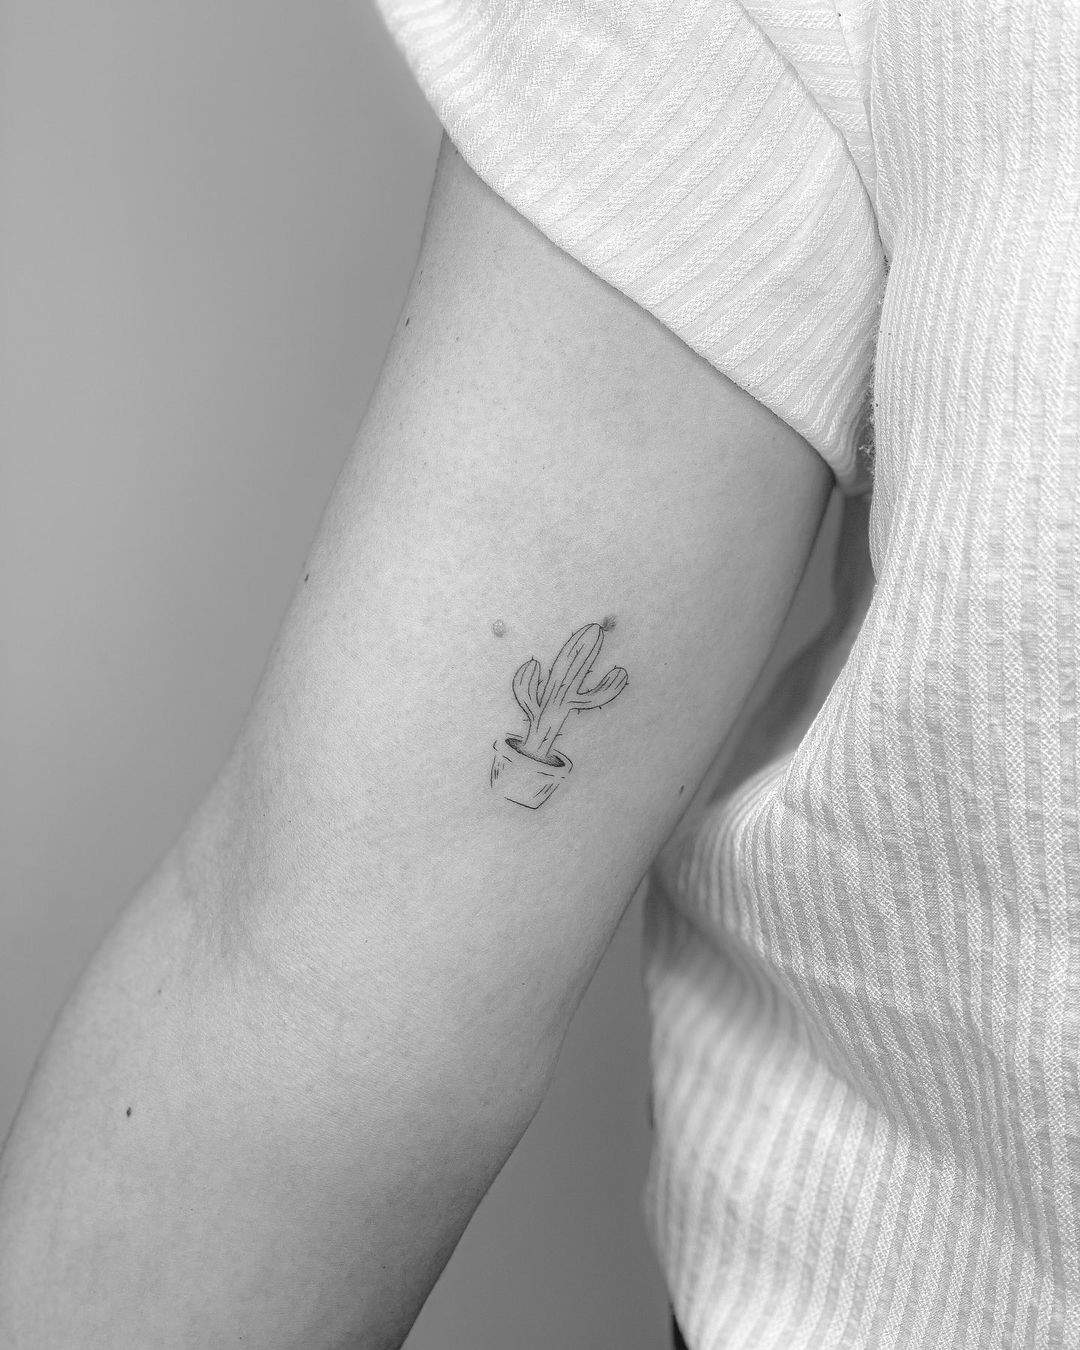 Tatuaje de un cactus con maceta en el brazo